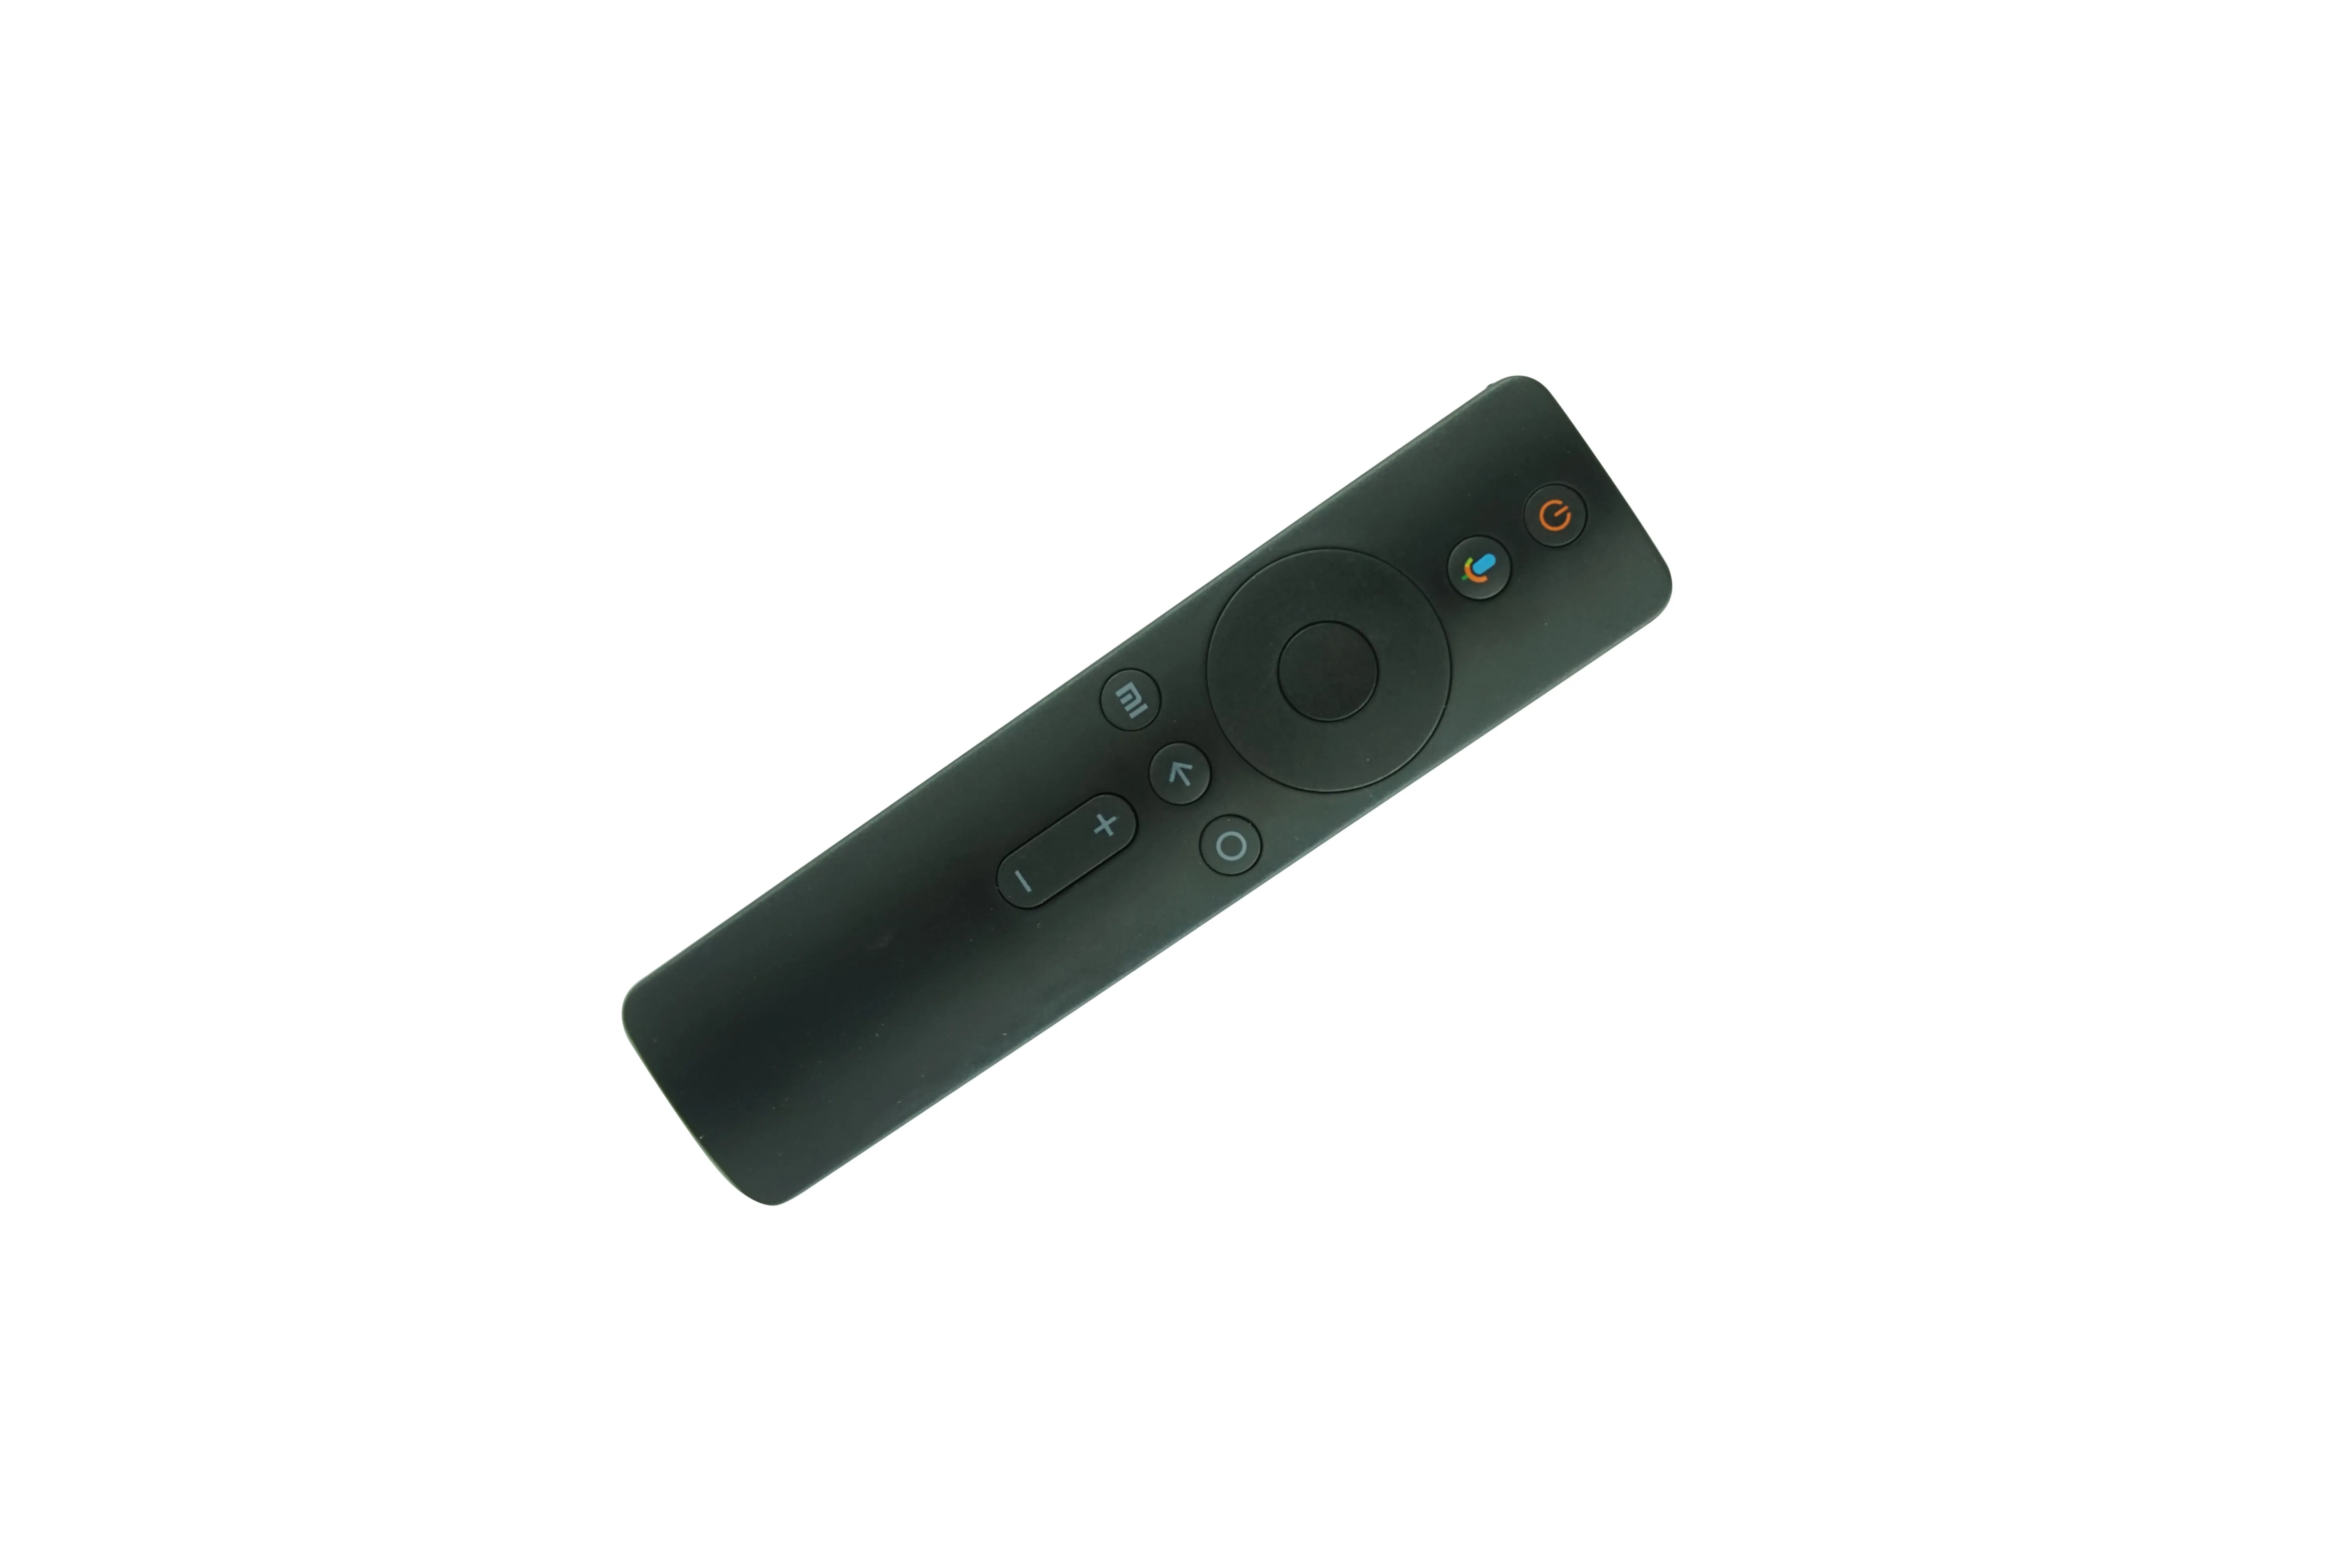 جهاز التحكم عن بعد الصوتي بلوتوث لـ Xiaomi Mi LED TV 4A Pro L55M5-AN HDTV300Y